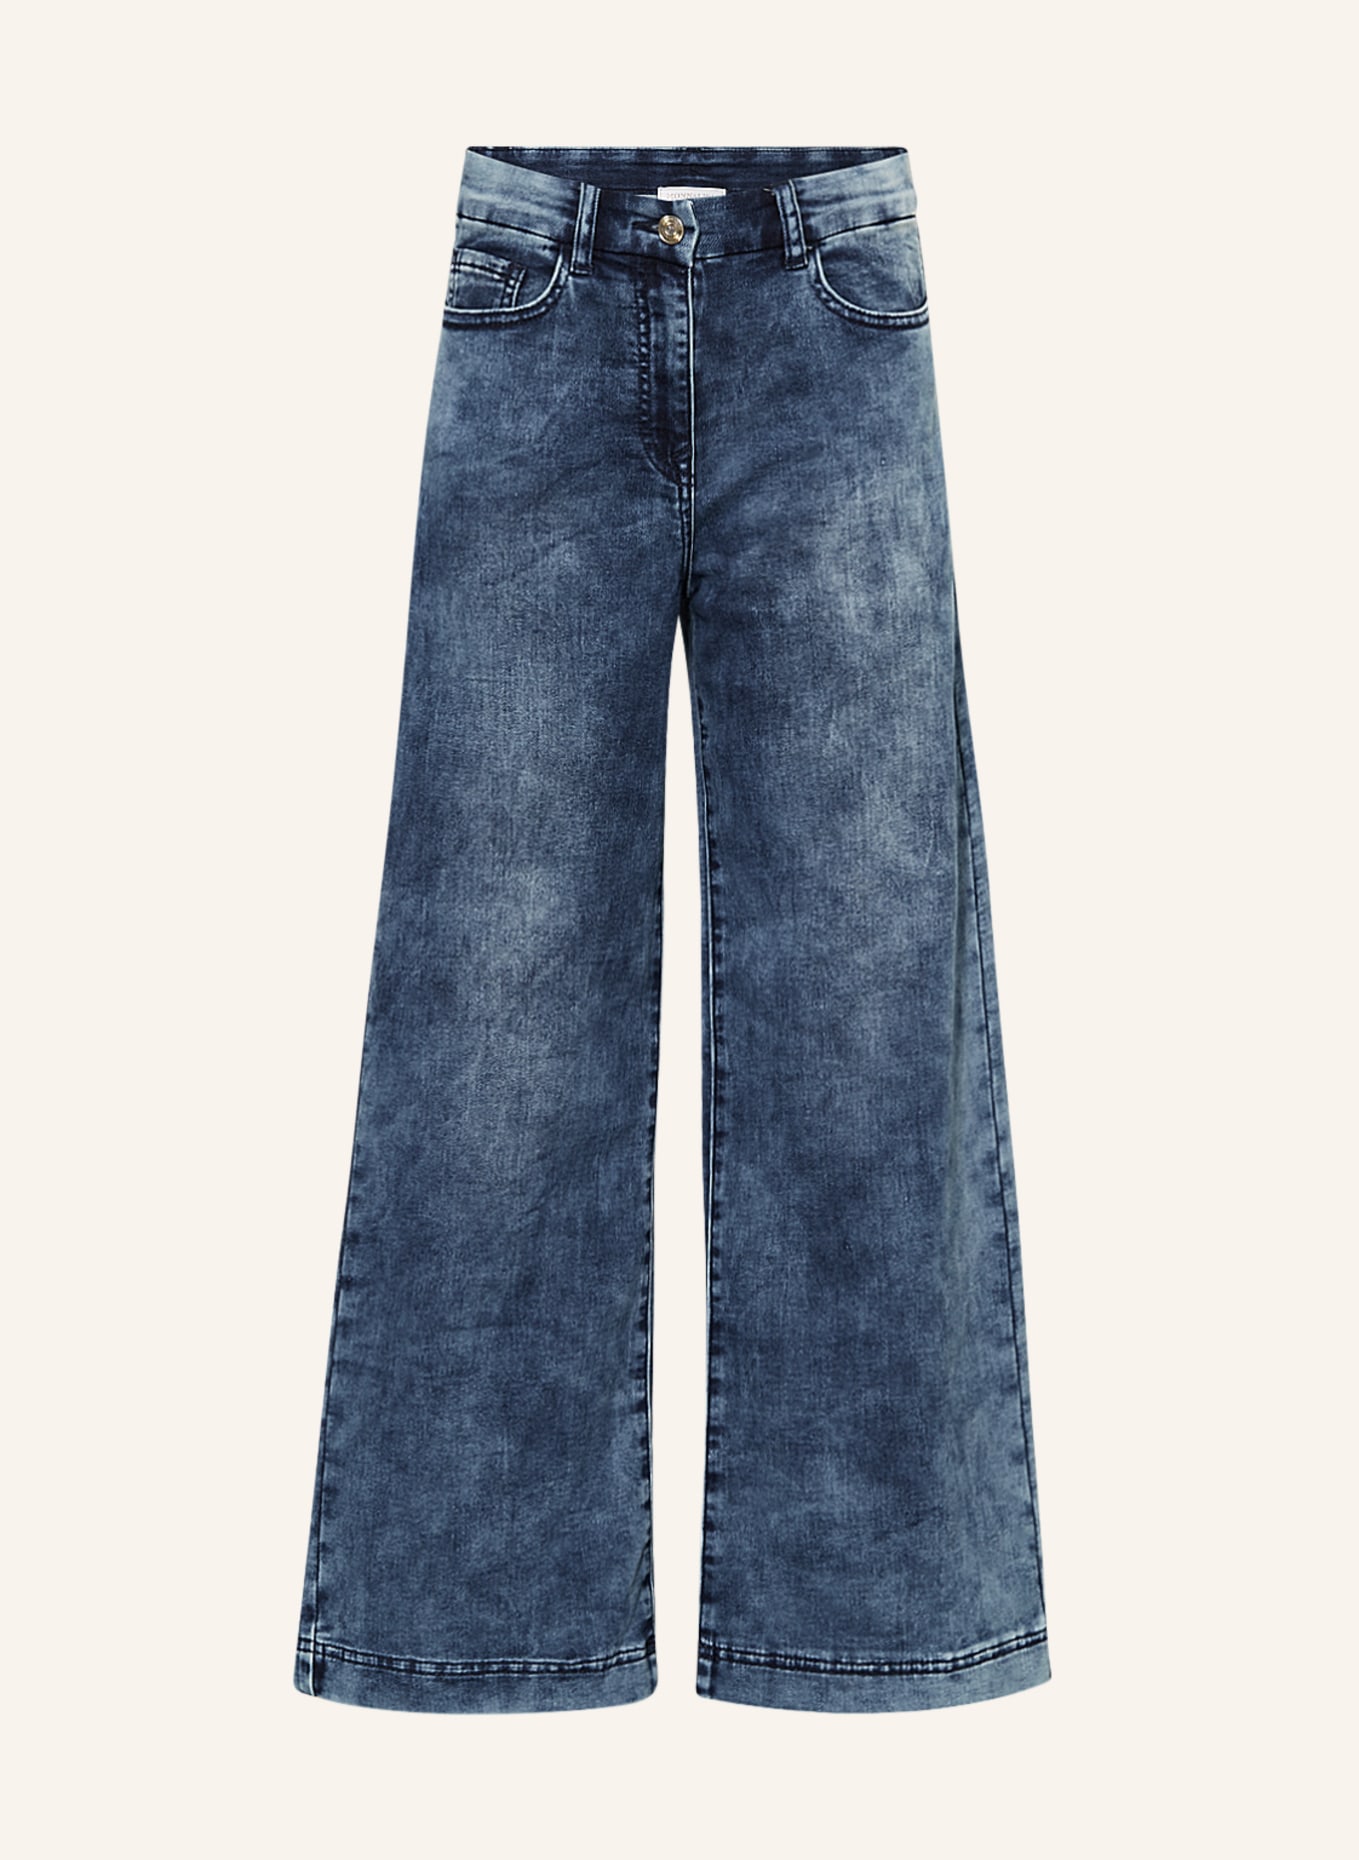 MONNALISA Jeans mit Schmucksteinen, Farbe: DUNKELBLAU (Bild 1)